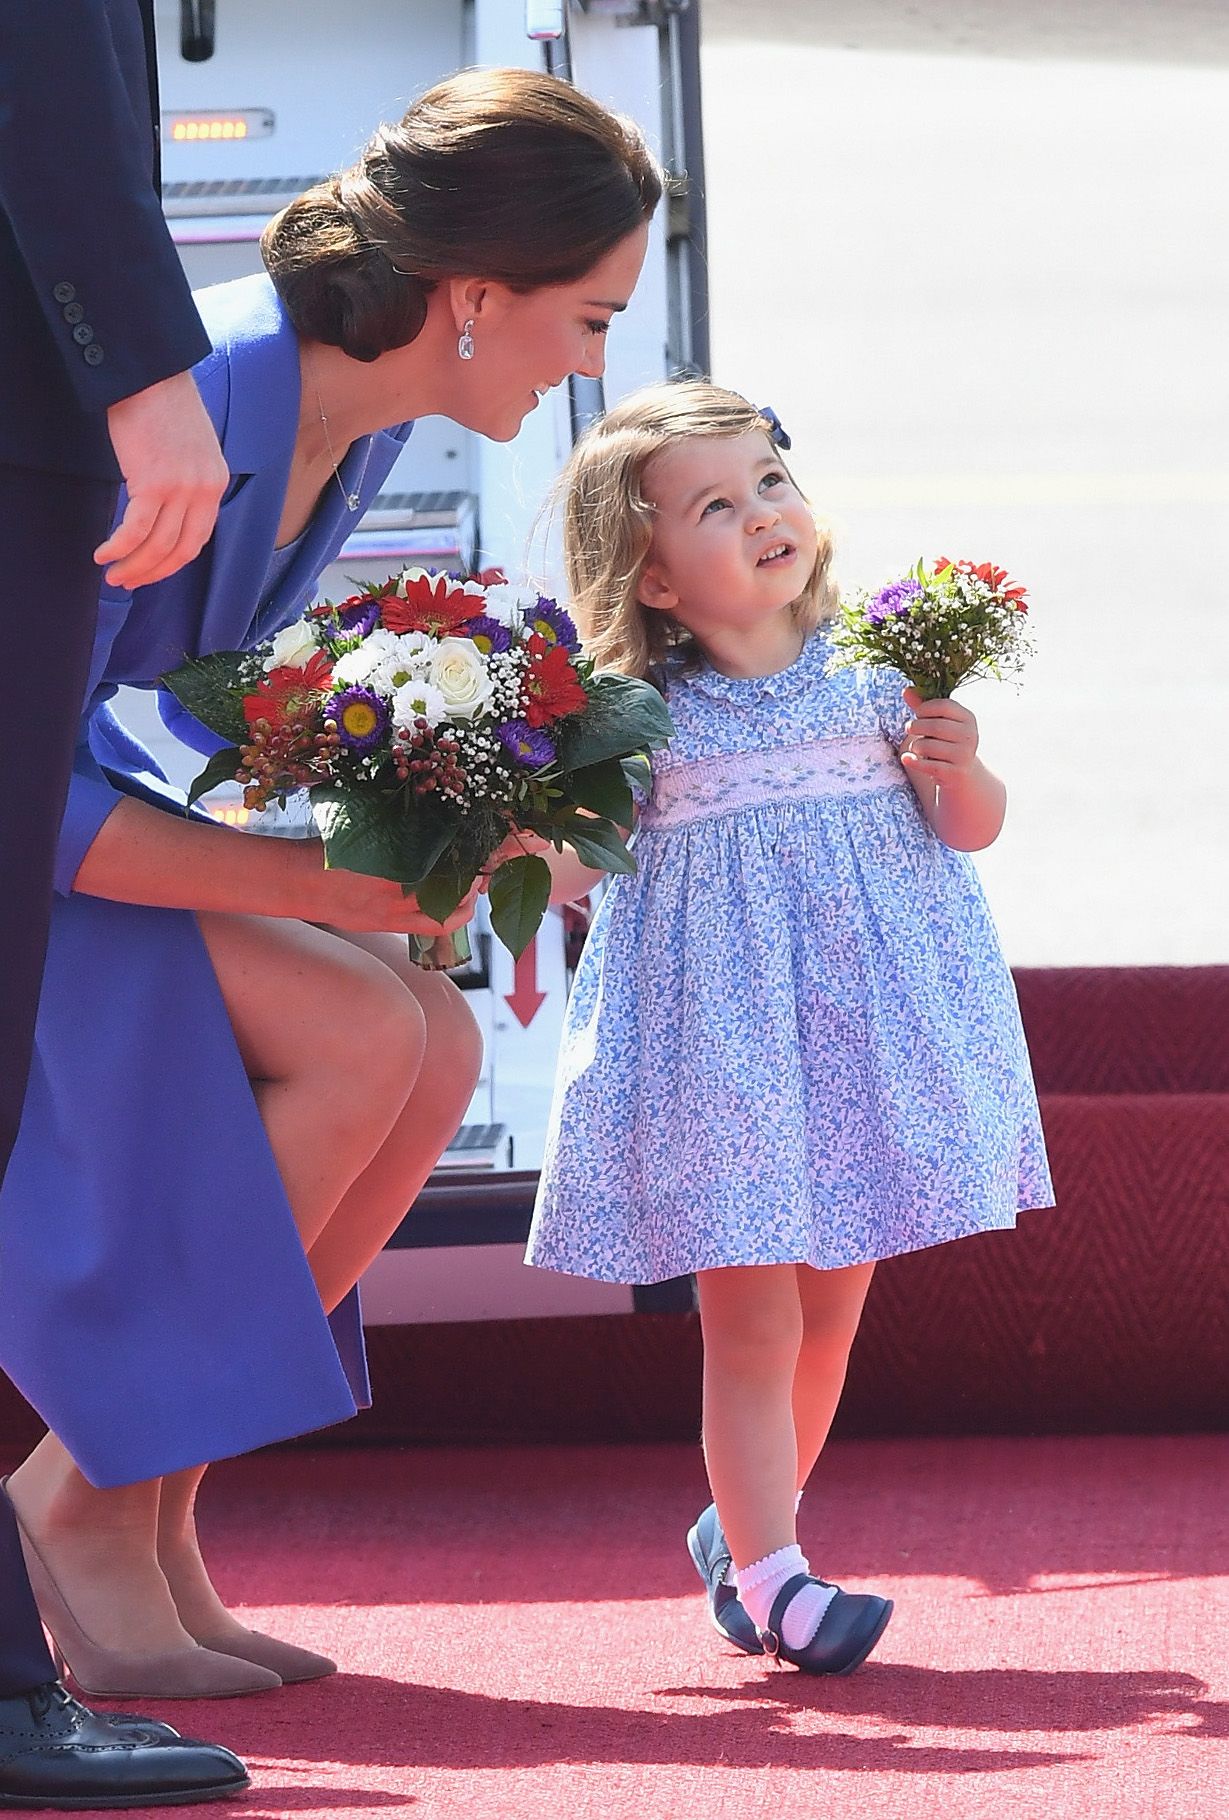 10 ganger sa prinsesse Kate hva alle tenker om foreldre